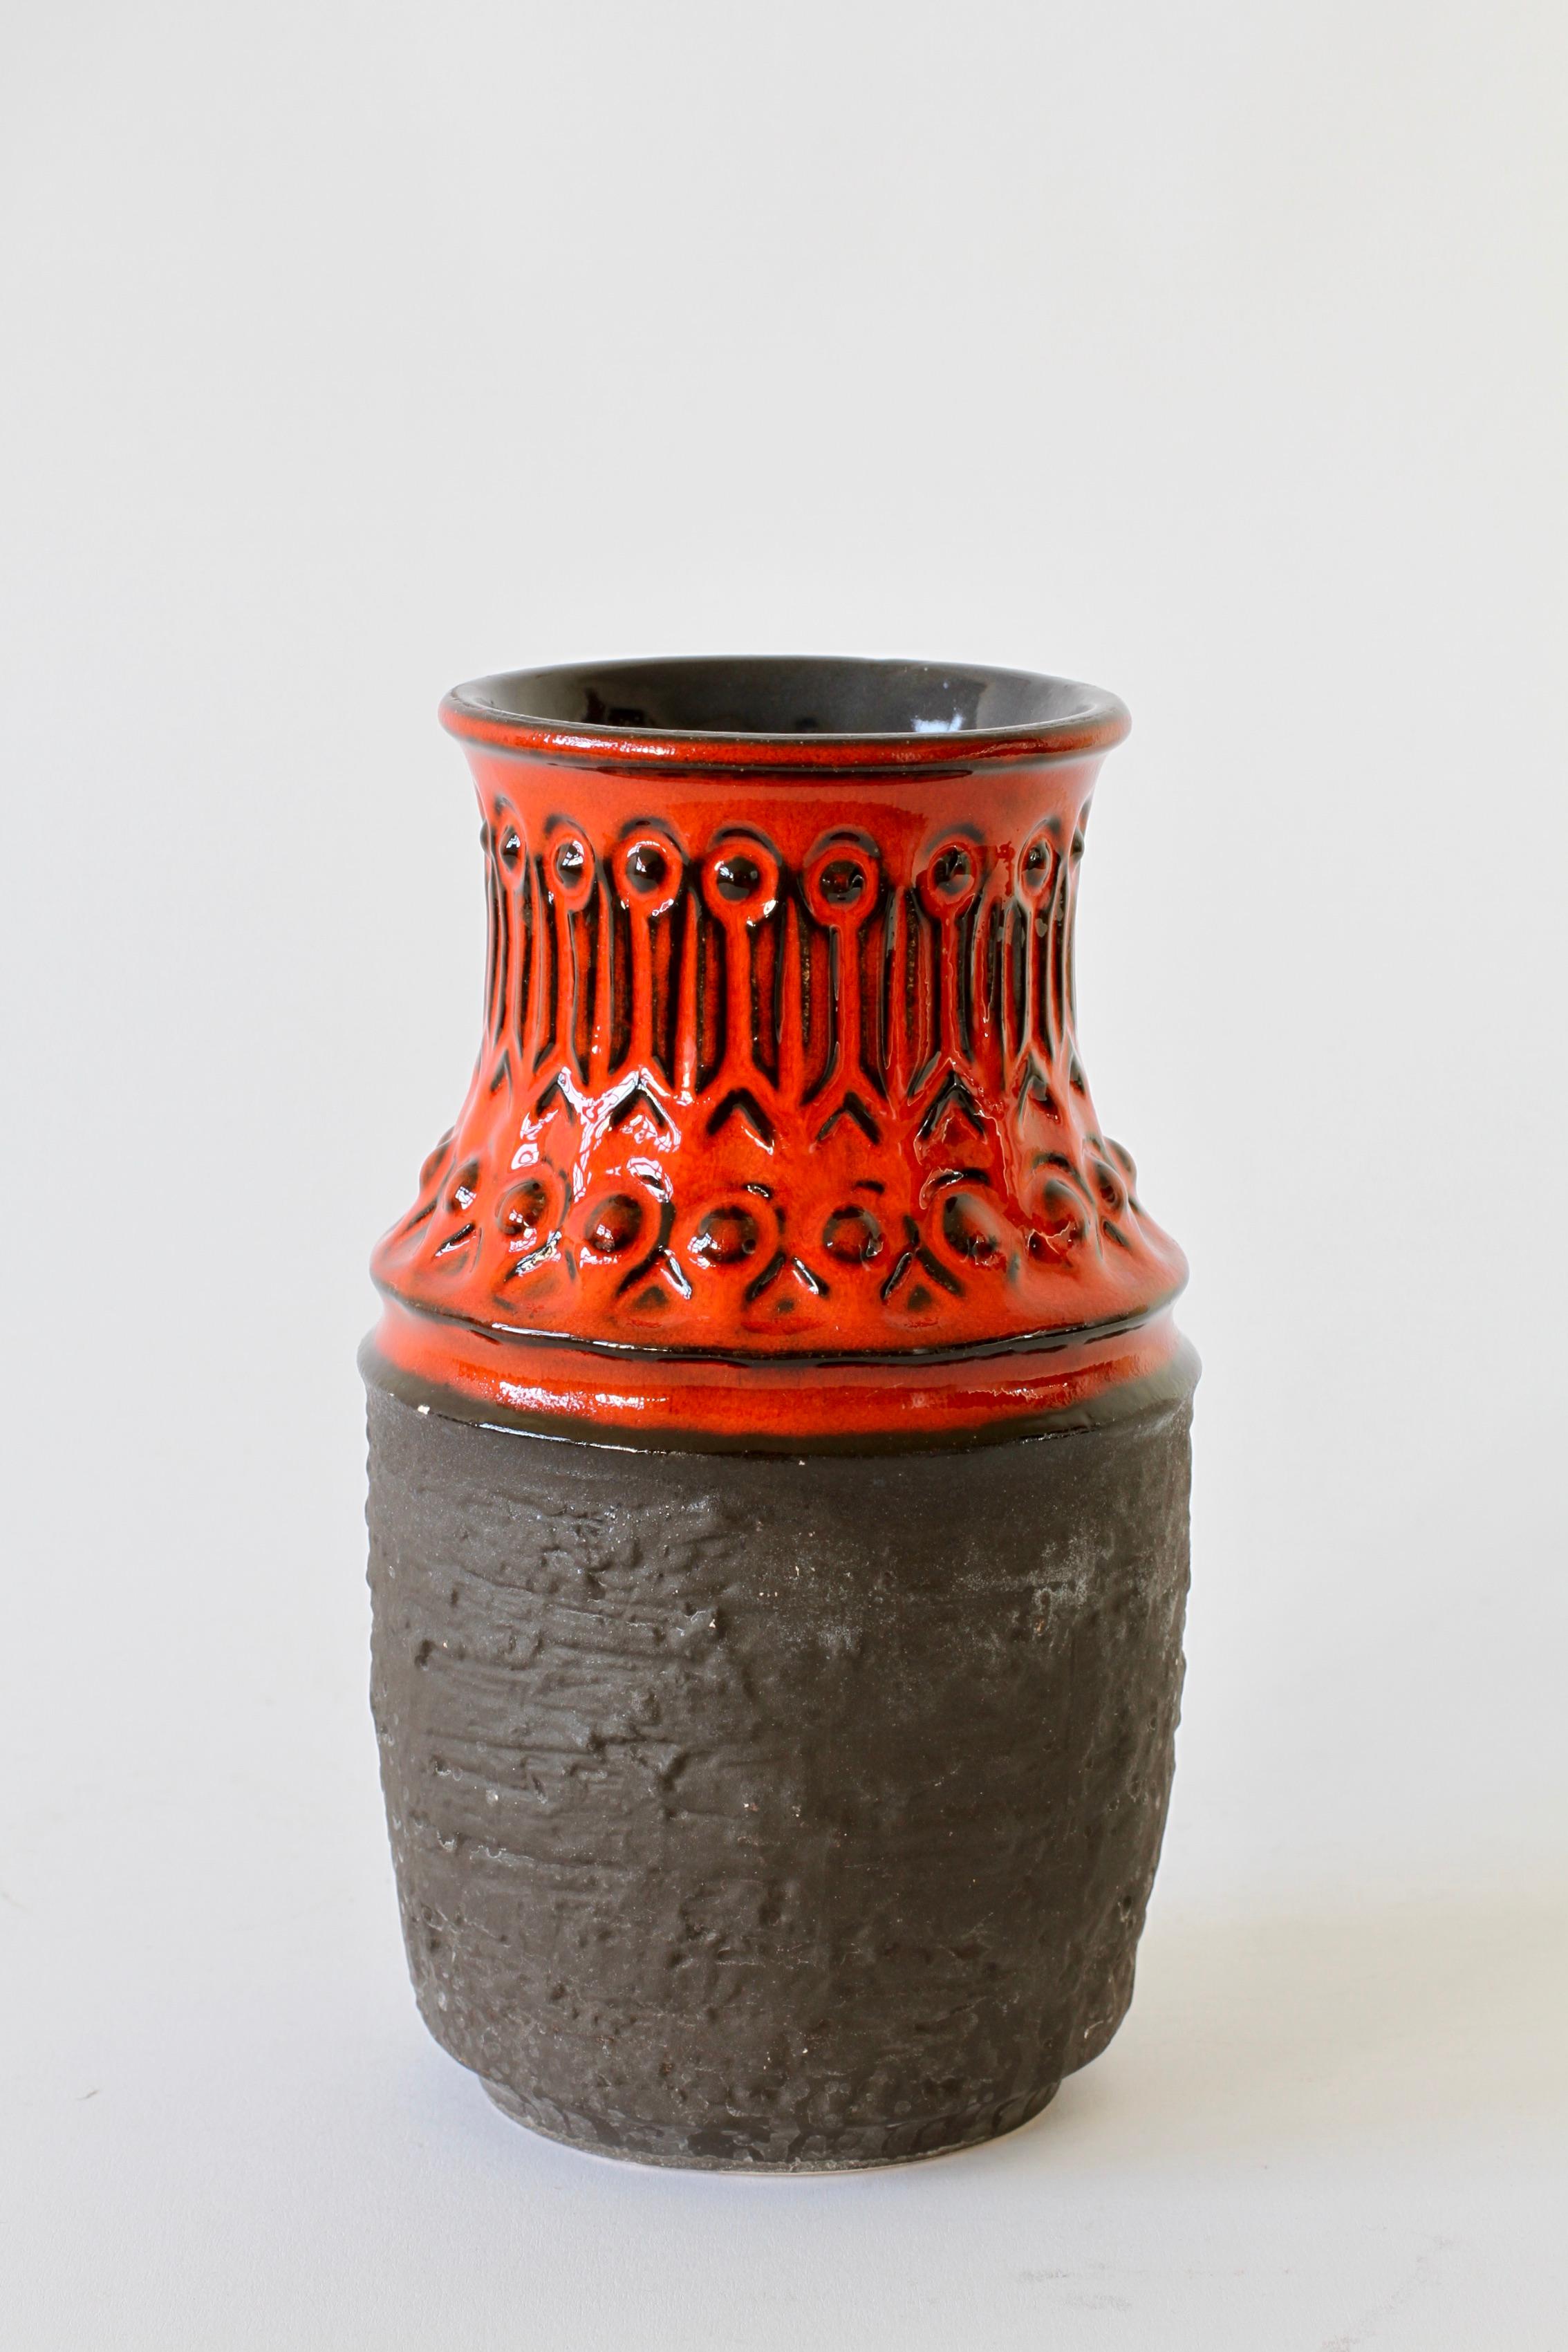 Eine schöne Vase in auffälligem Rot und Mattschwarz mit Prägemuster - Formnummer 1 582 20 - hergestellt von Jasba Pottery Mitte der 1970er Jahre.

Auf dunklen Palisander- und Teakholztischen oder -regalen, die von dänischen Designern wie Hans